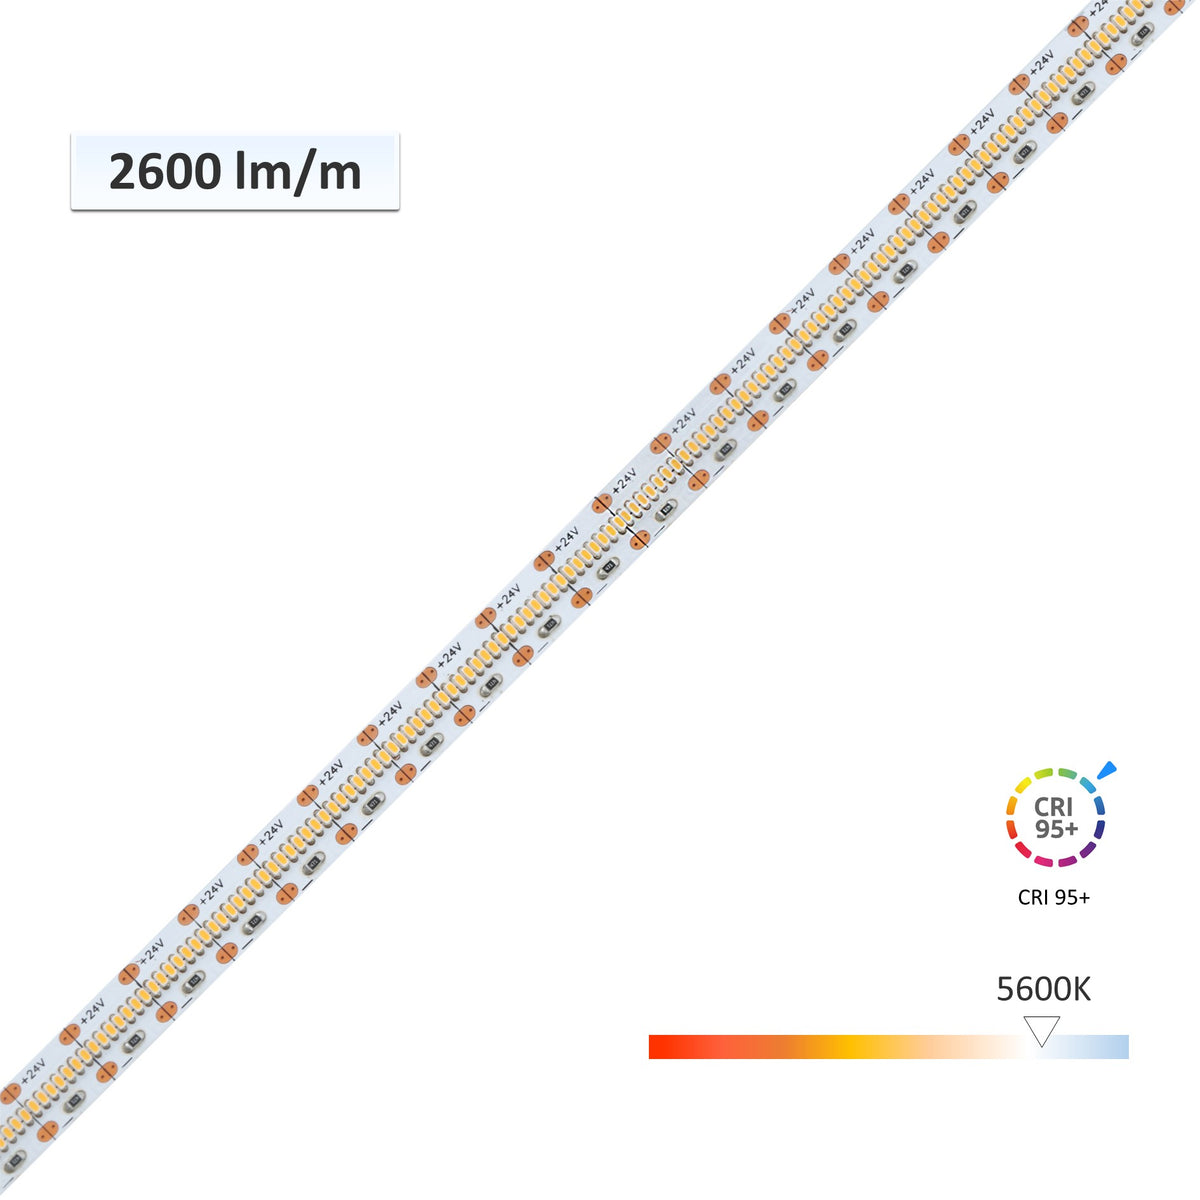 24V 5 meters 600 LEDs SMD 2110 LED flexible white light strip